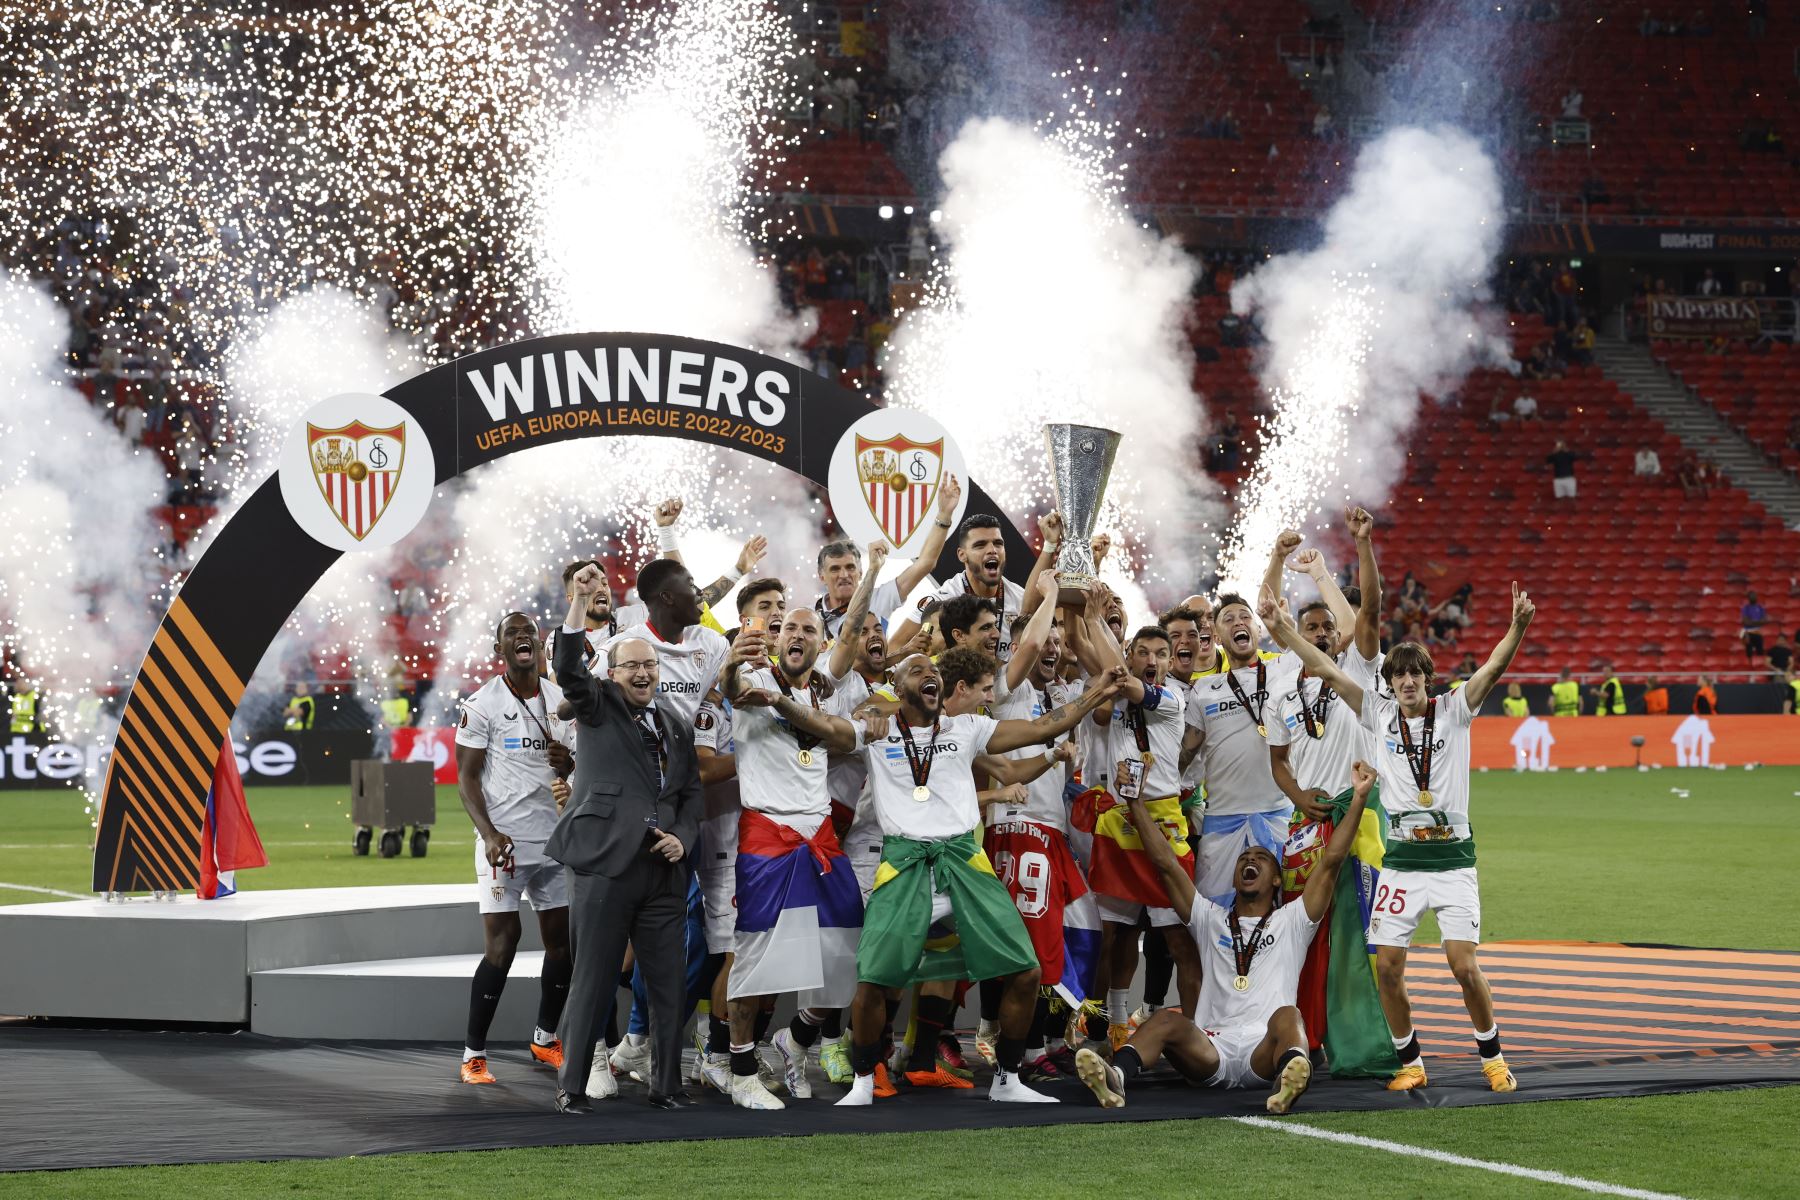 Los jugadores del Sevilla celebran su triunfo en la final de la Europa League tras derrotar a la Roma en la tanda de penaltis en el encuentro que han disputado este miércoles en el Puskas Arena de Budapest.
Foto: EFE